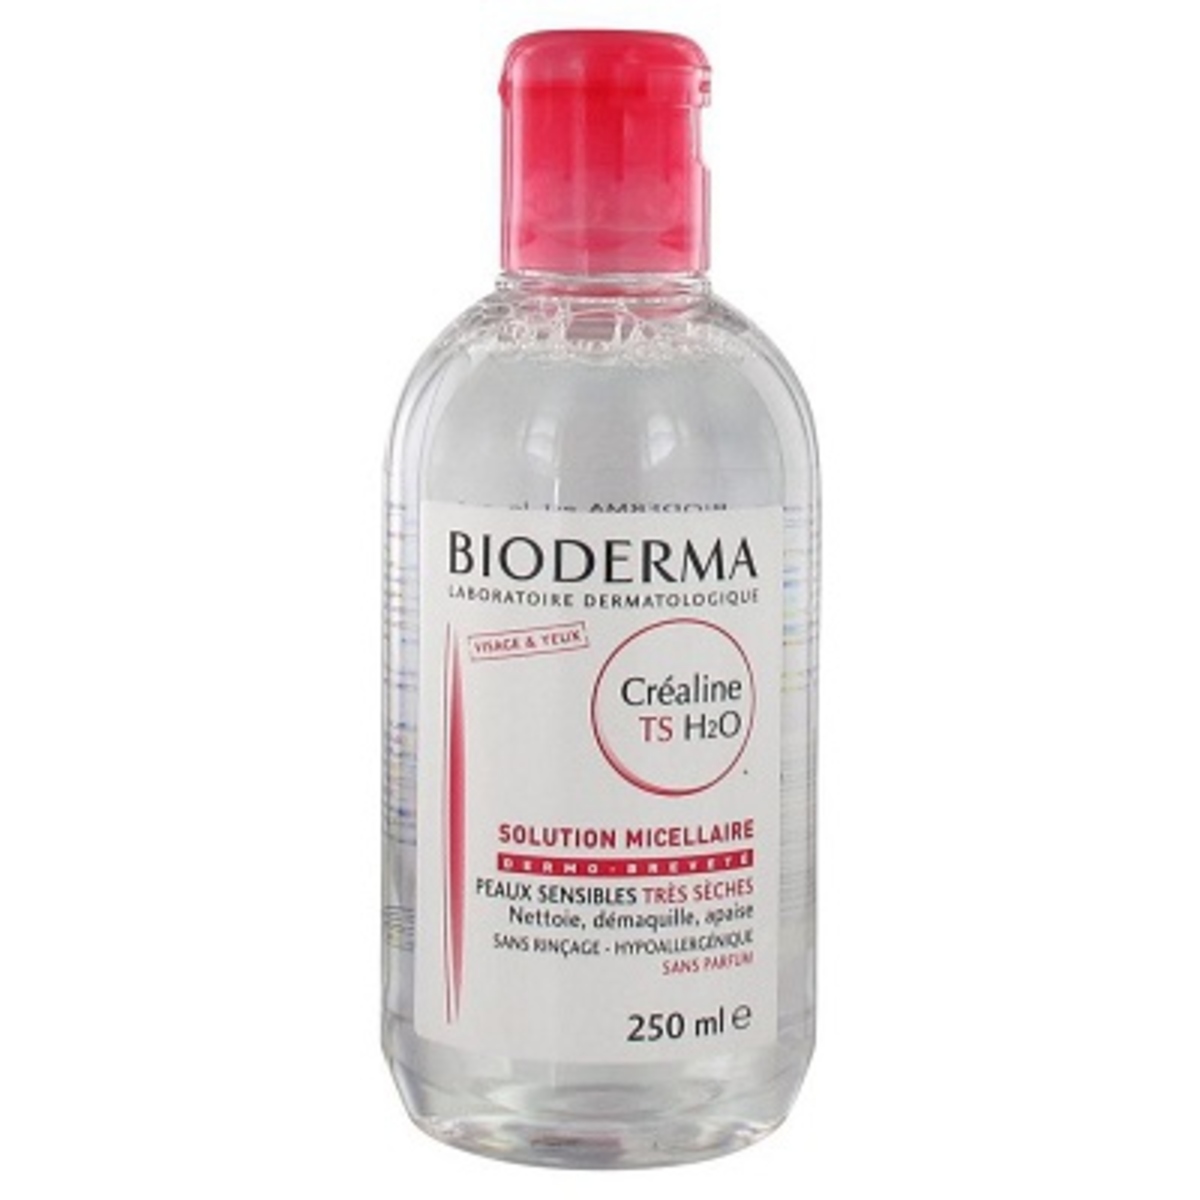 Bioderma Crealine TS H2O sans parfum flacon 250ml 500ml 